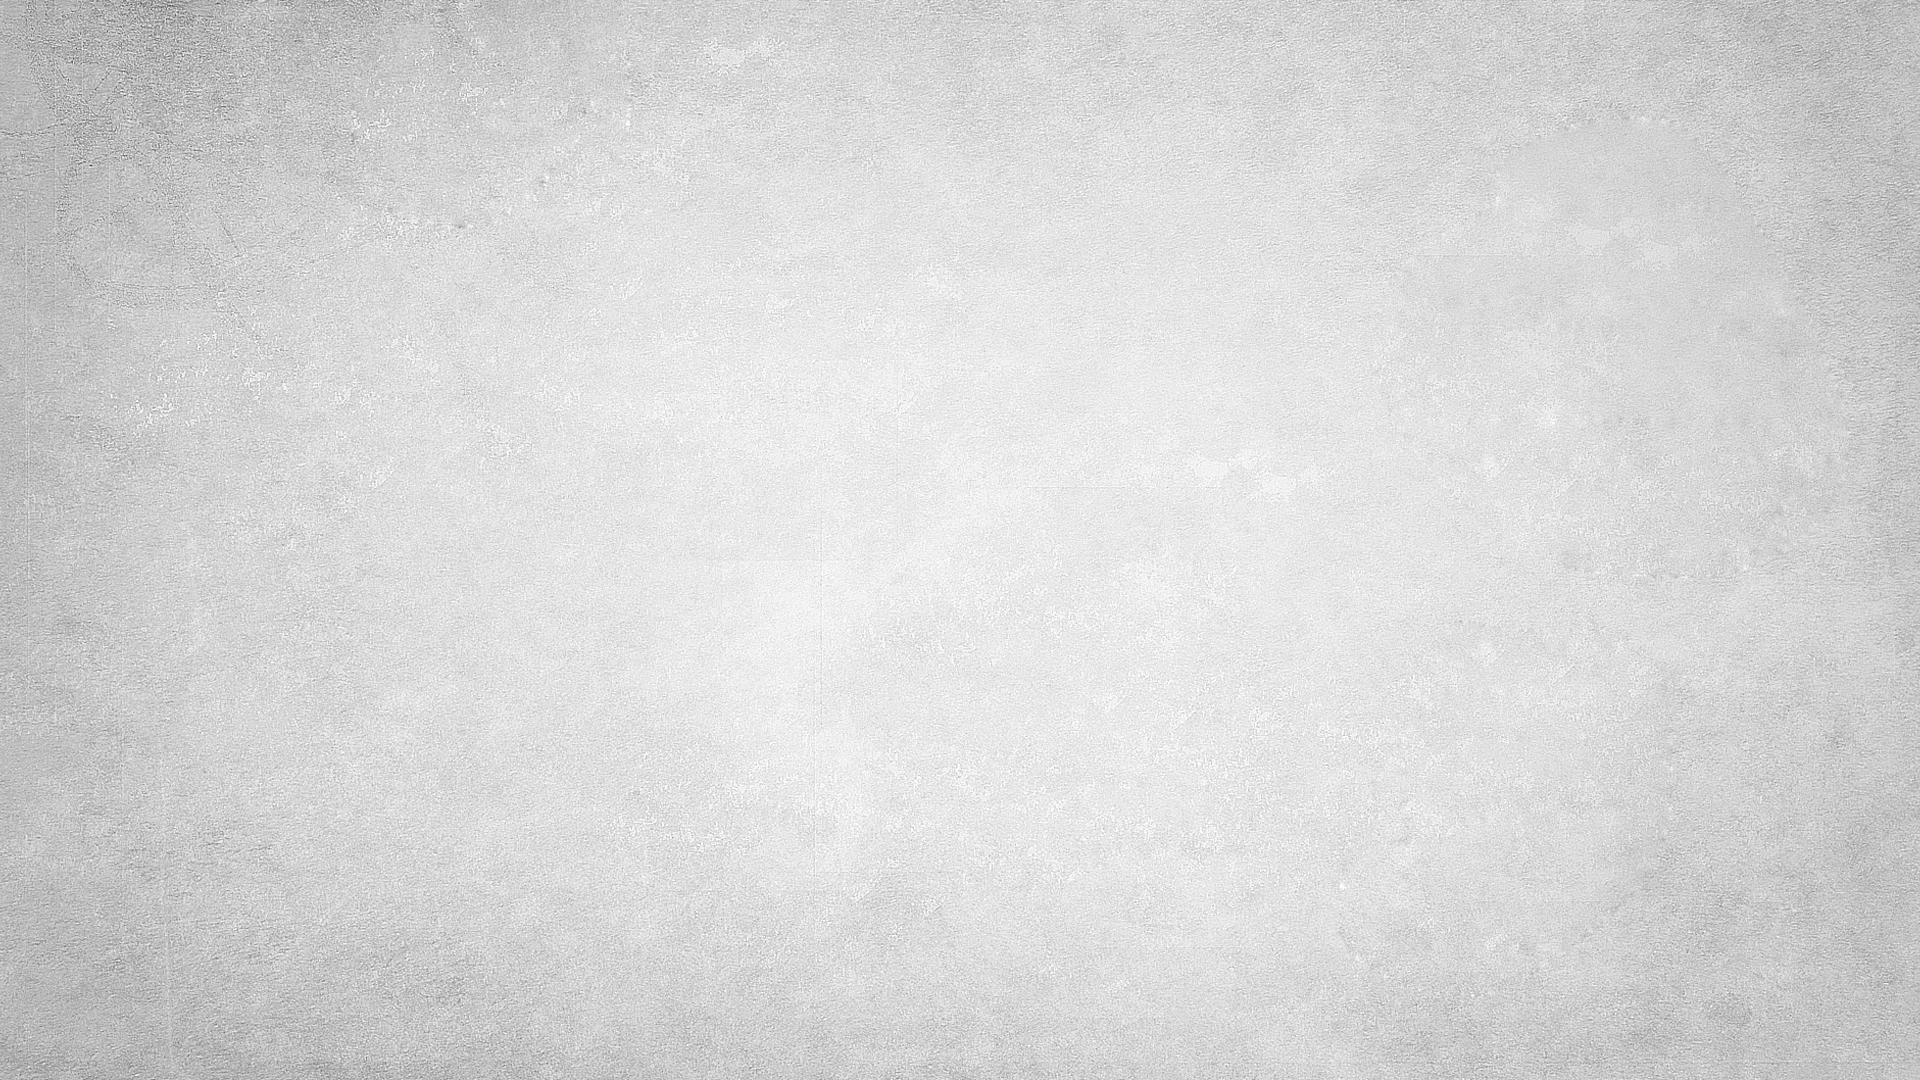 1920x1080] Off-White